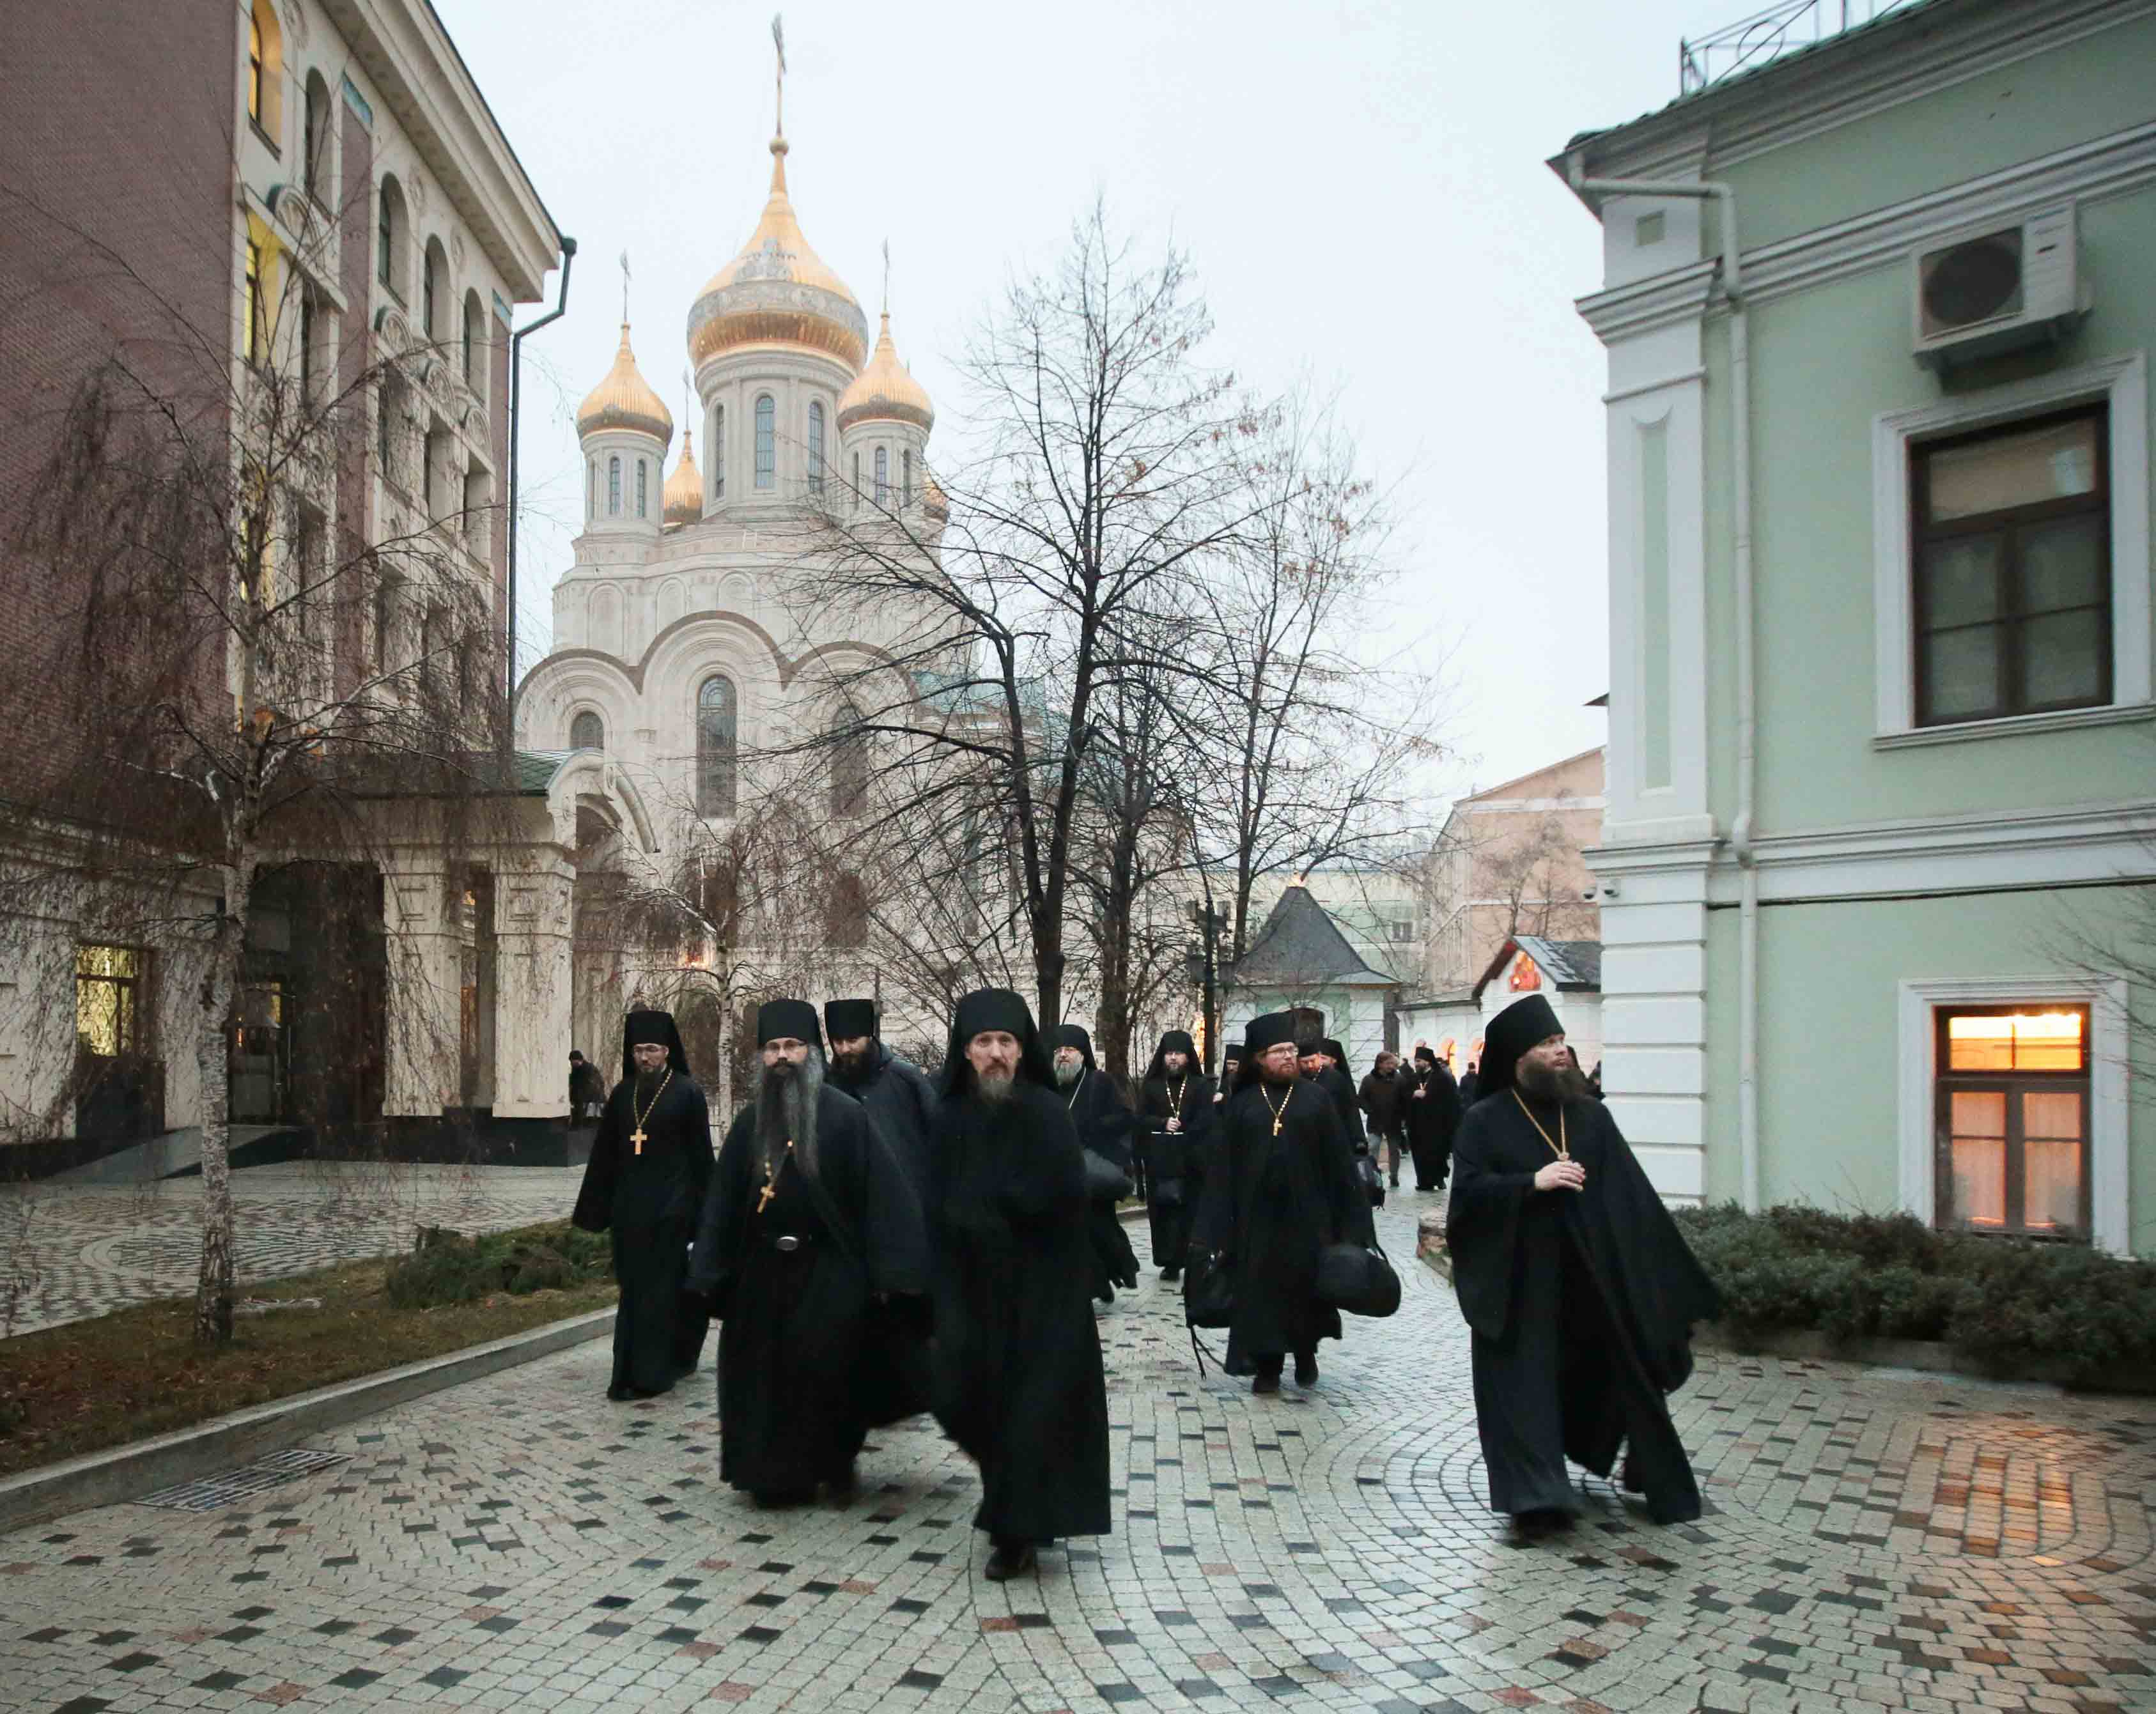 Сегодня в сретенском монастыре. Сретенский мужской монастырь в Москве. Храм Сретенского монастыря в Москве.